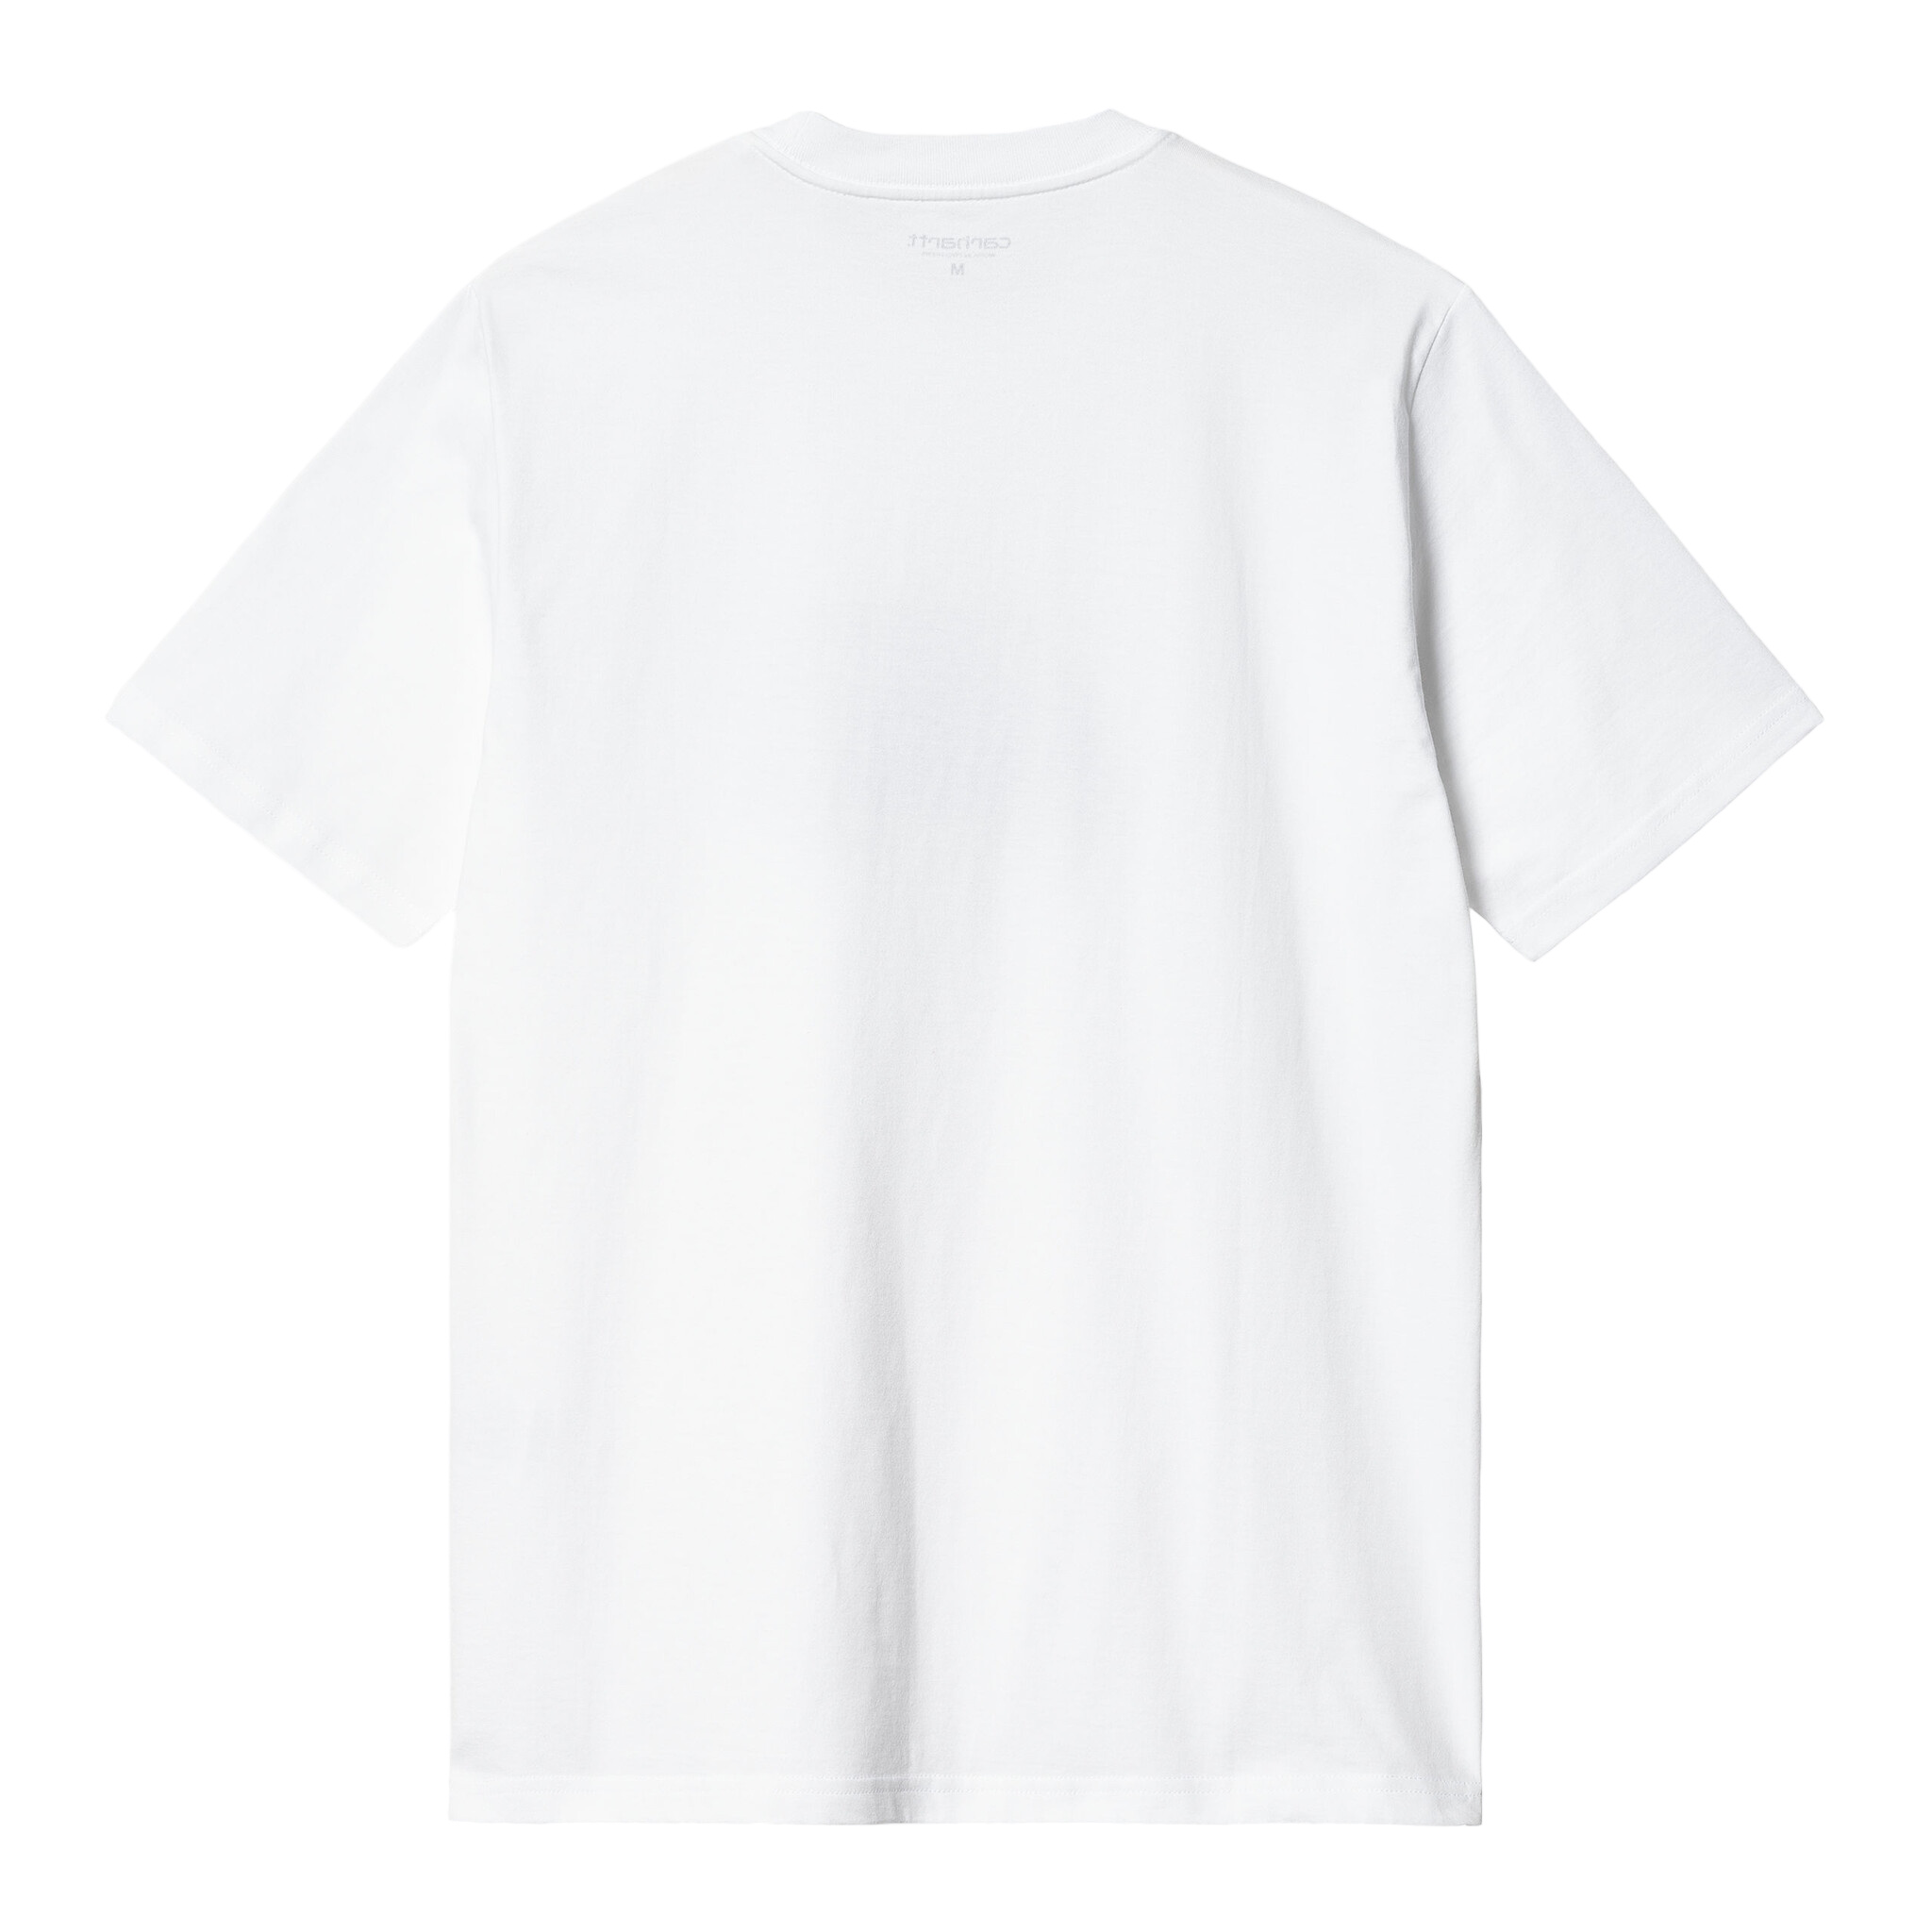 Carhartt WIP S/S Mystery Machine T-Shirt - White